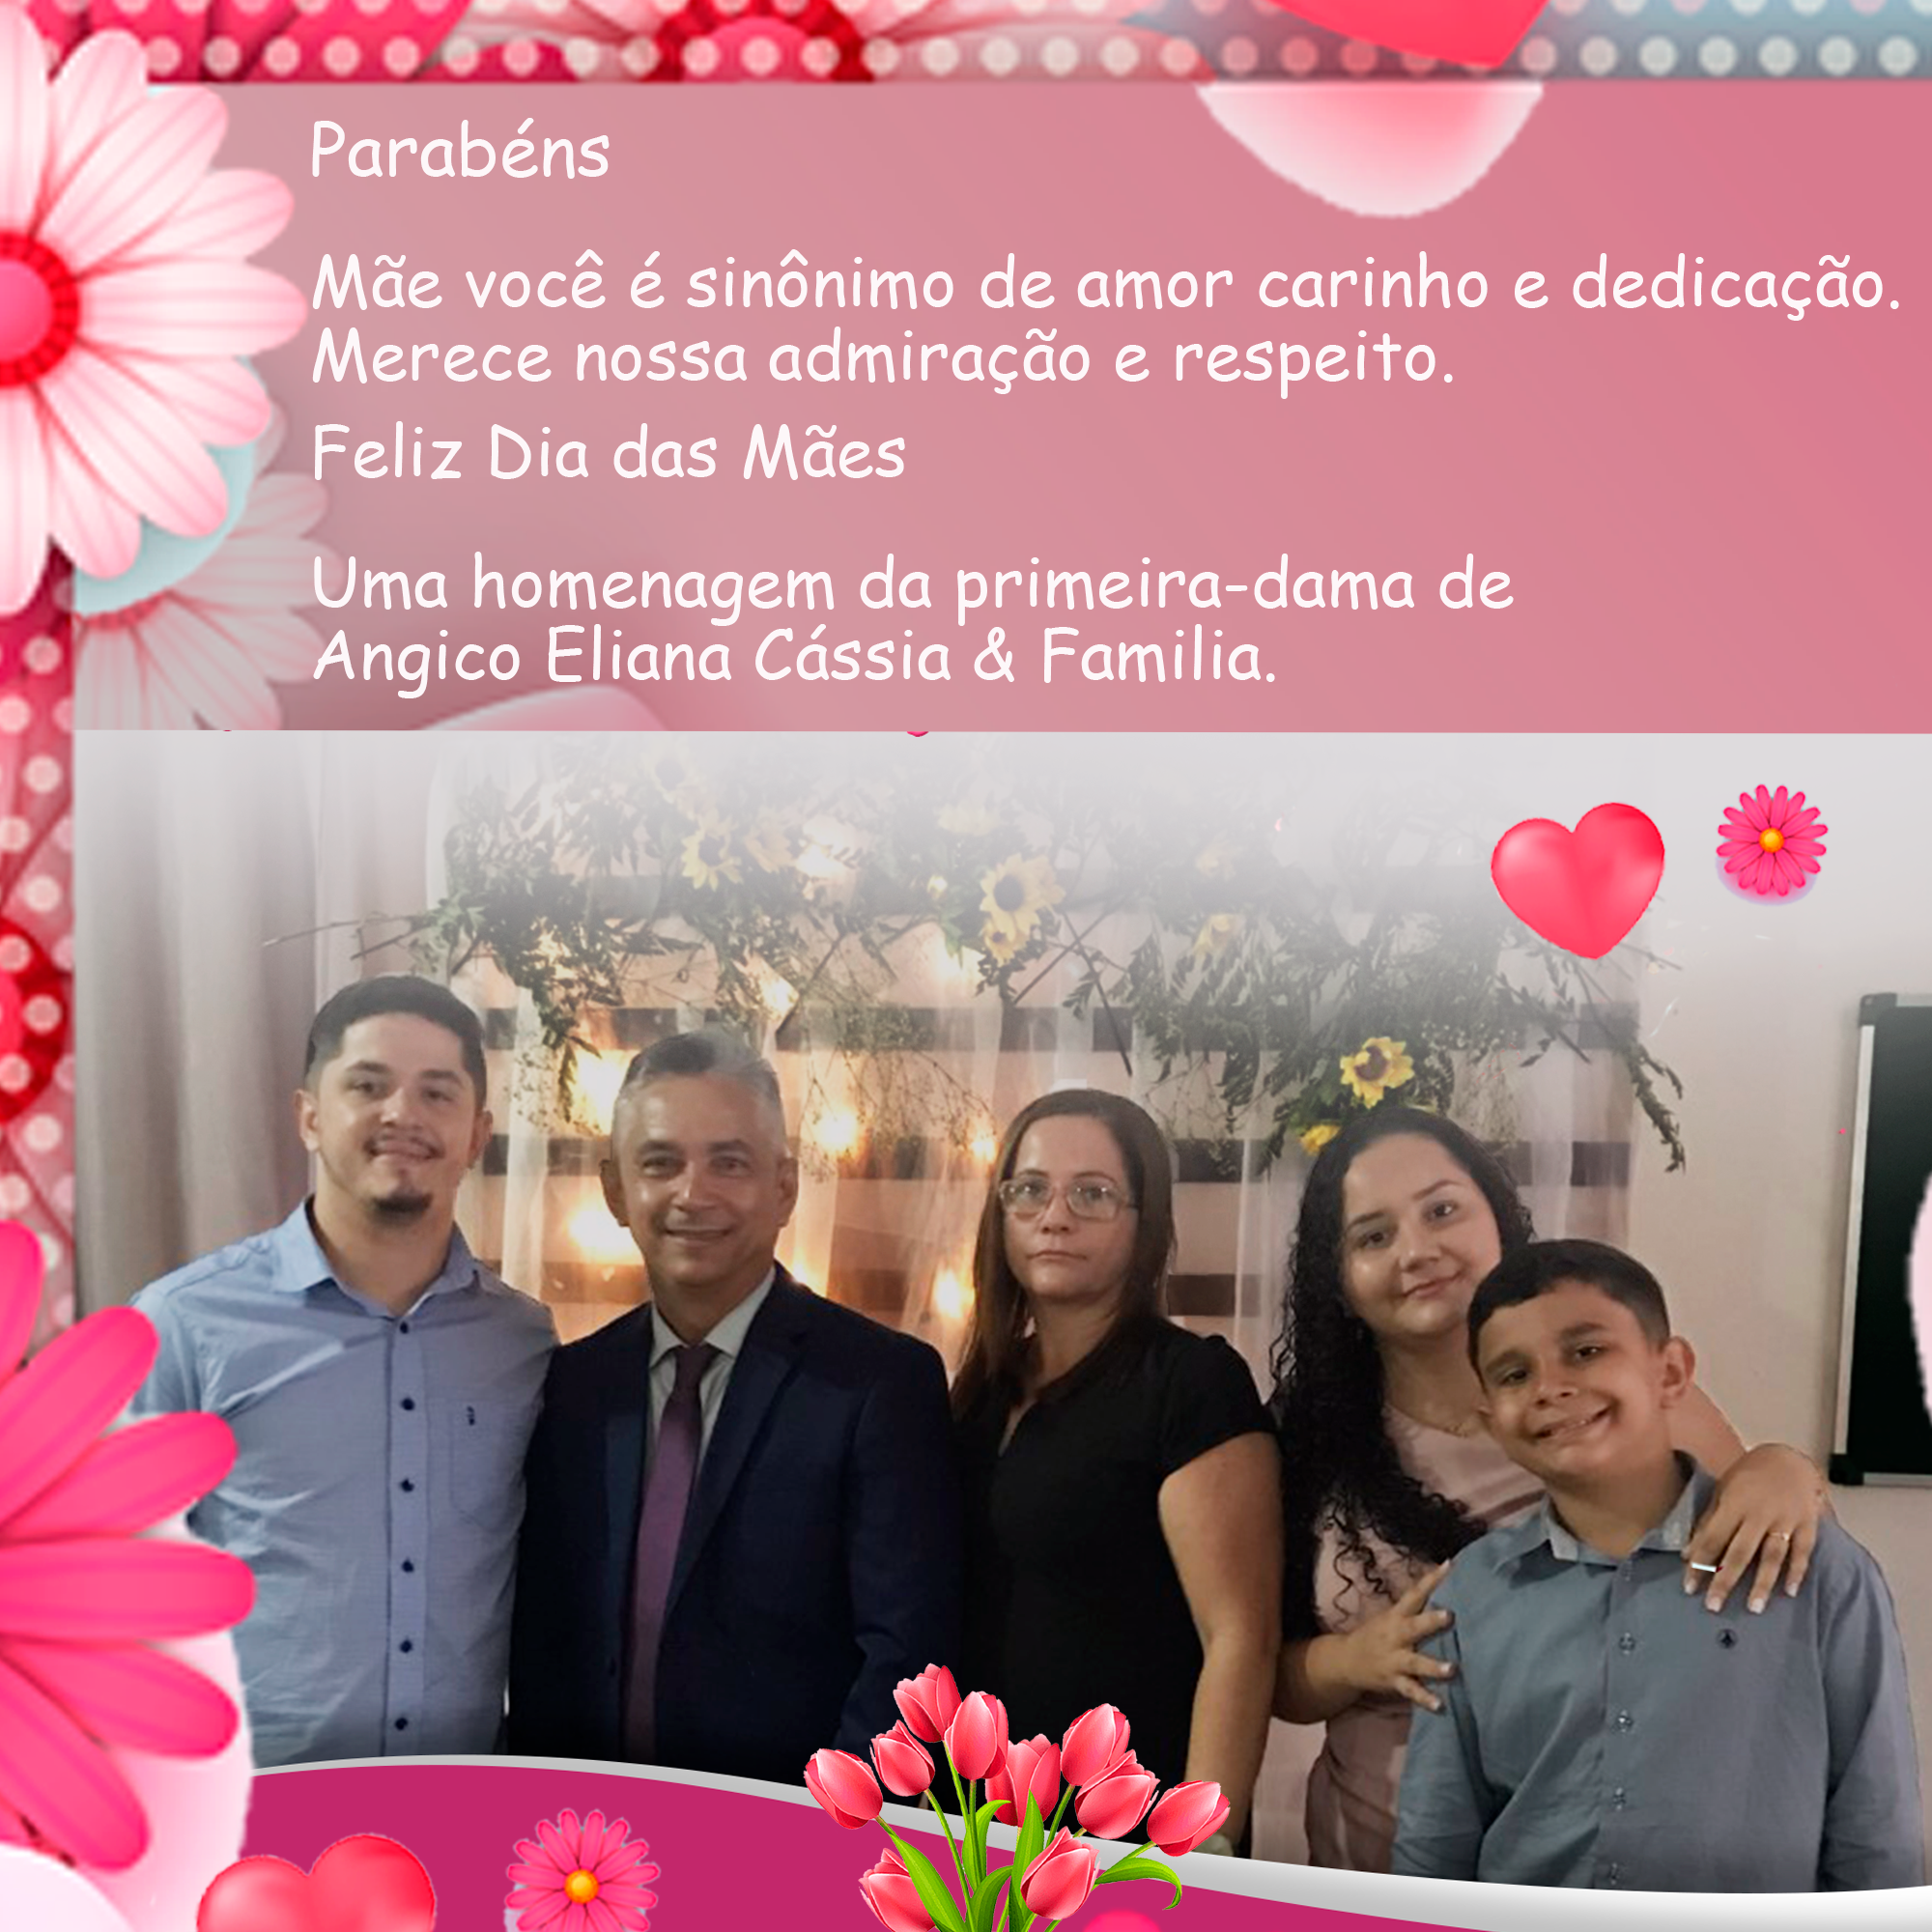 Prefeitura homenageia as mães de Angico com live e mensagem especial